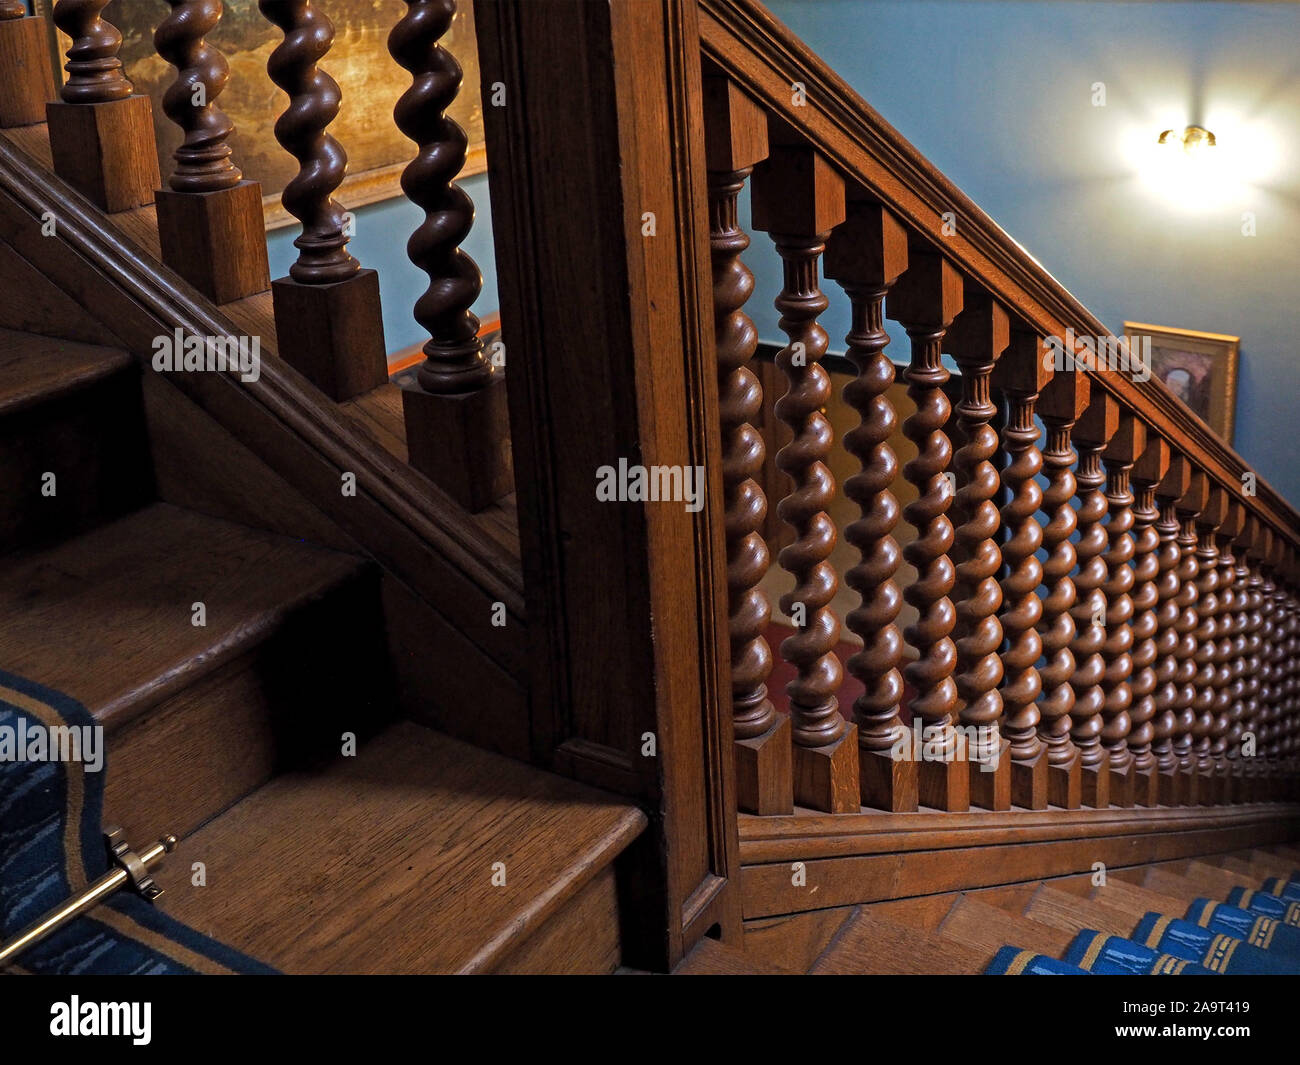 Poliertes Holz Treppe mit eingeschaltet twisted Balustraden, brass Stair rods und eleganten Geländer in einem englischen Landhaus. Stockfoto